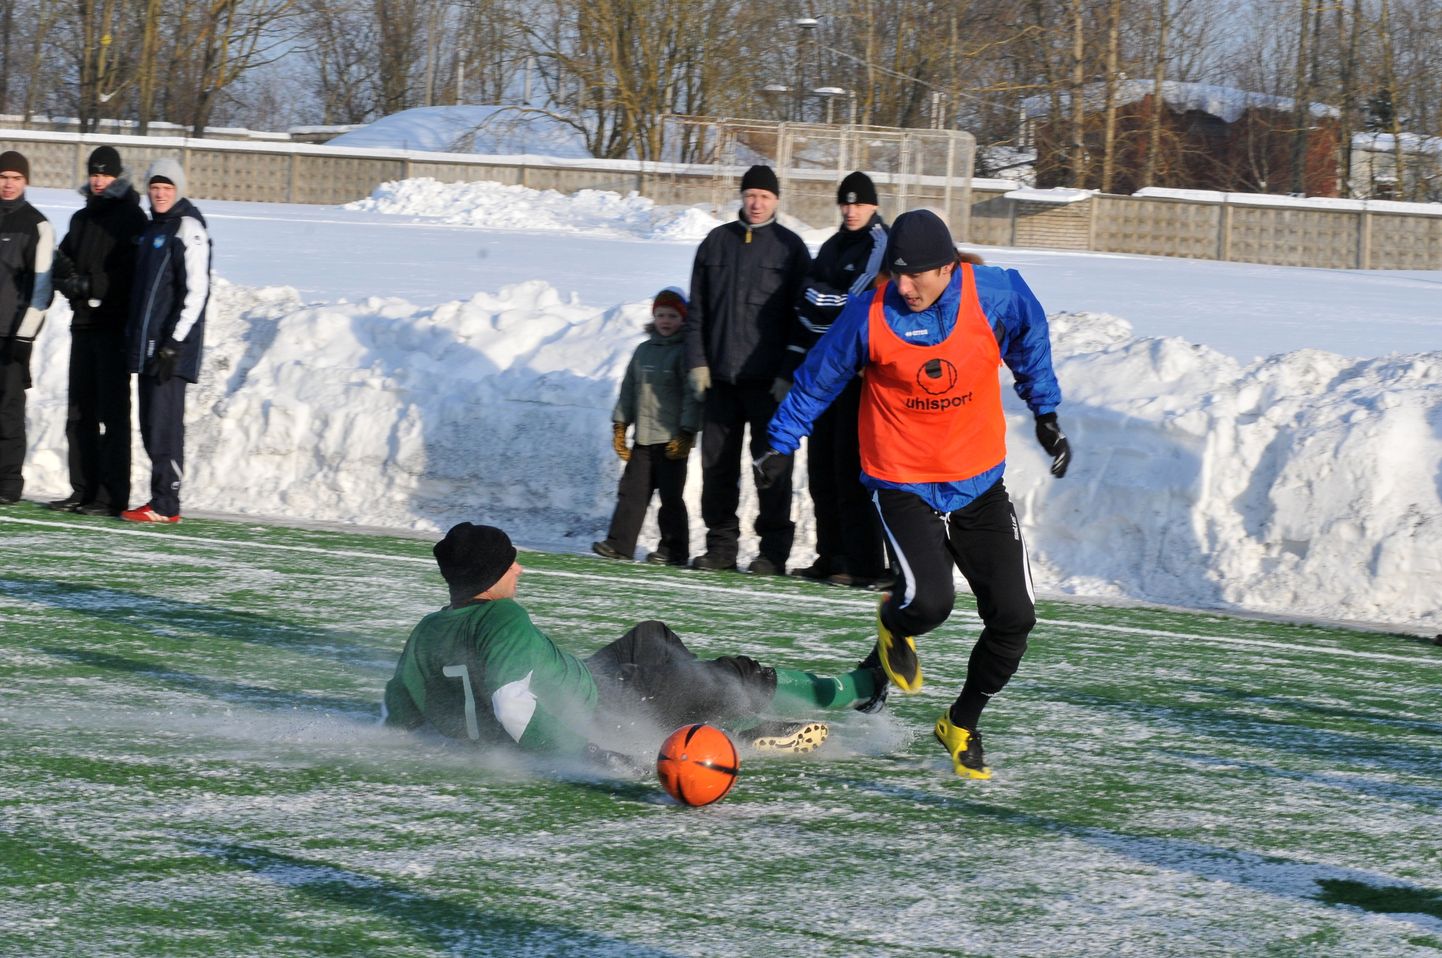 Еще как минимум две зимы в футбол в Ида-Вирумаа придется играть под открытым небом.